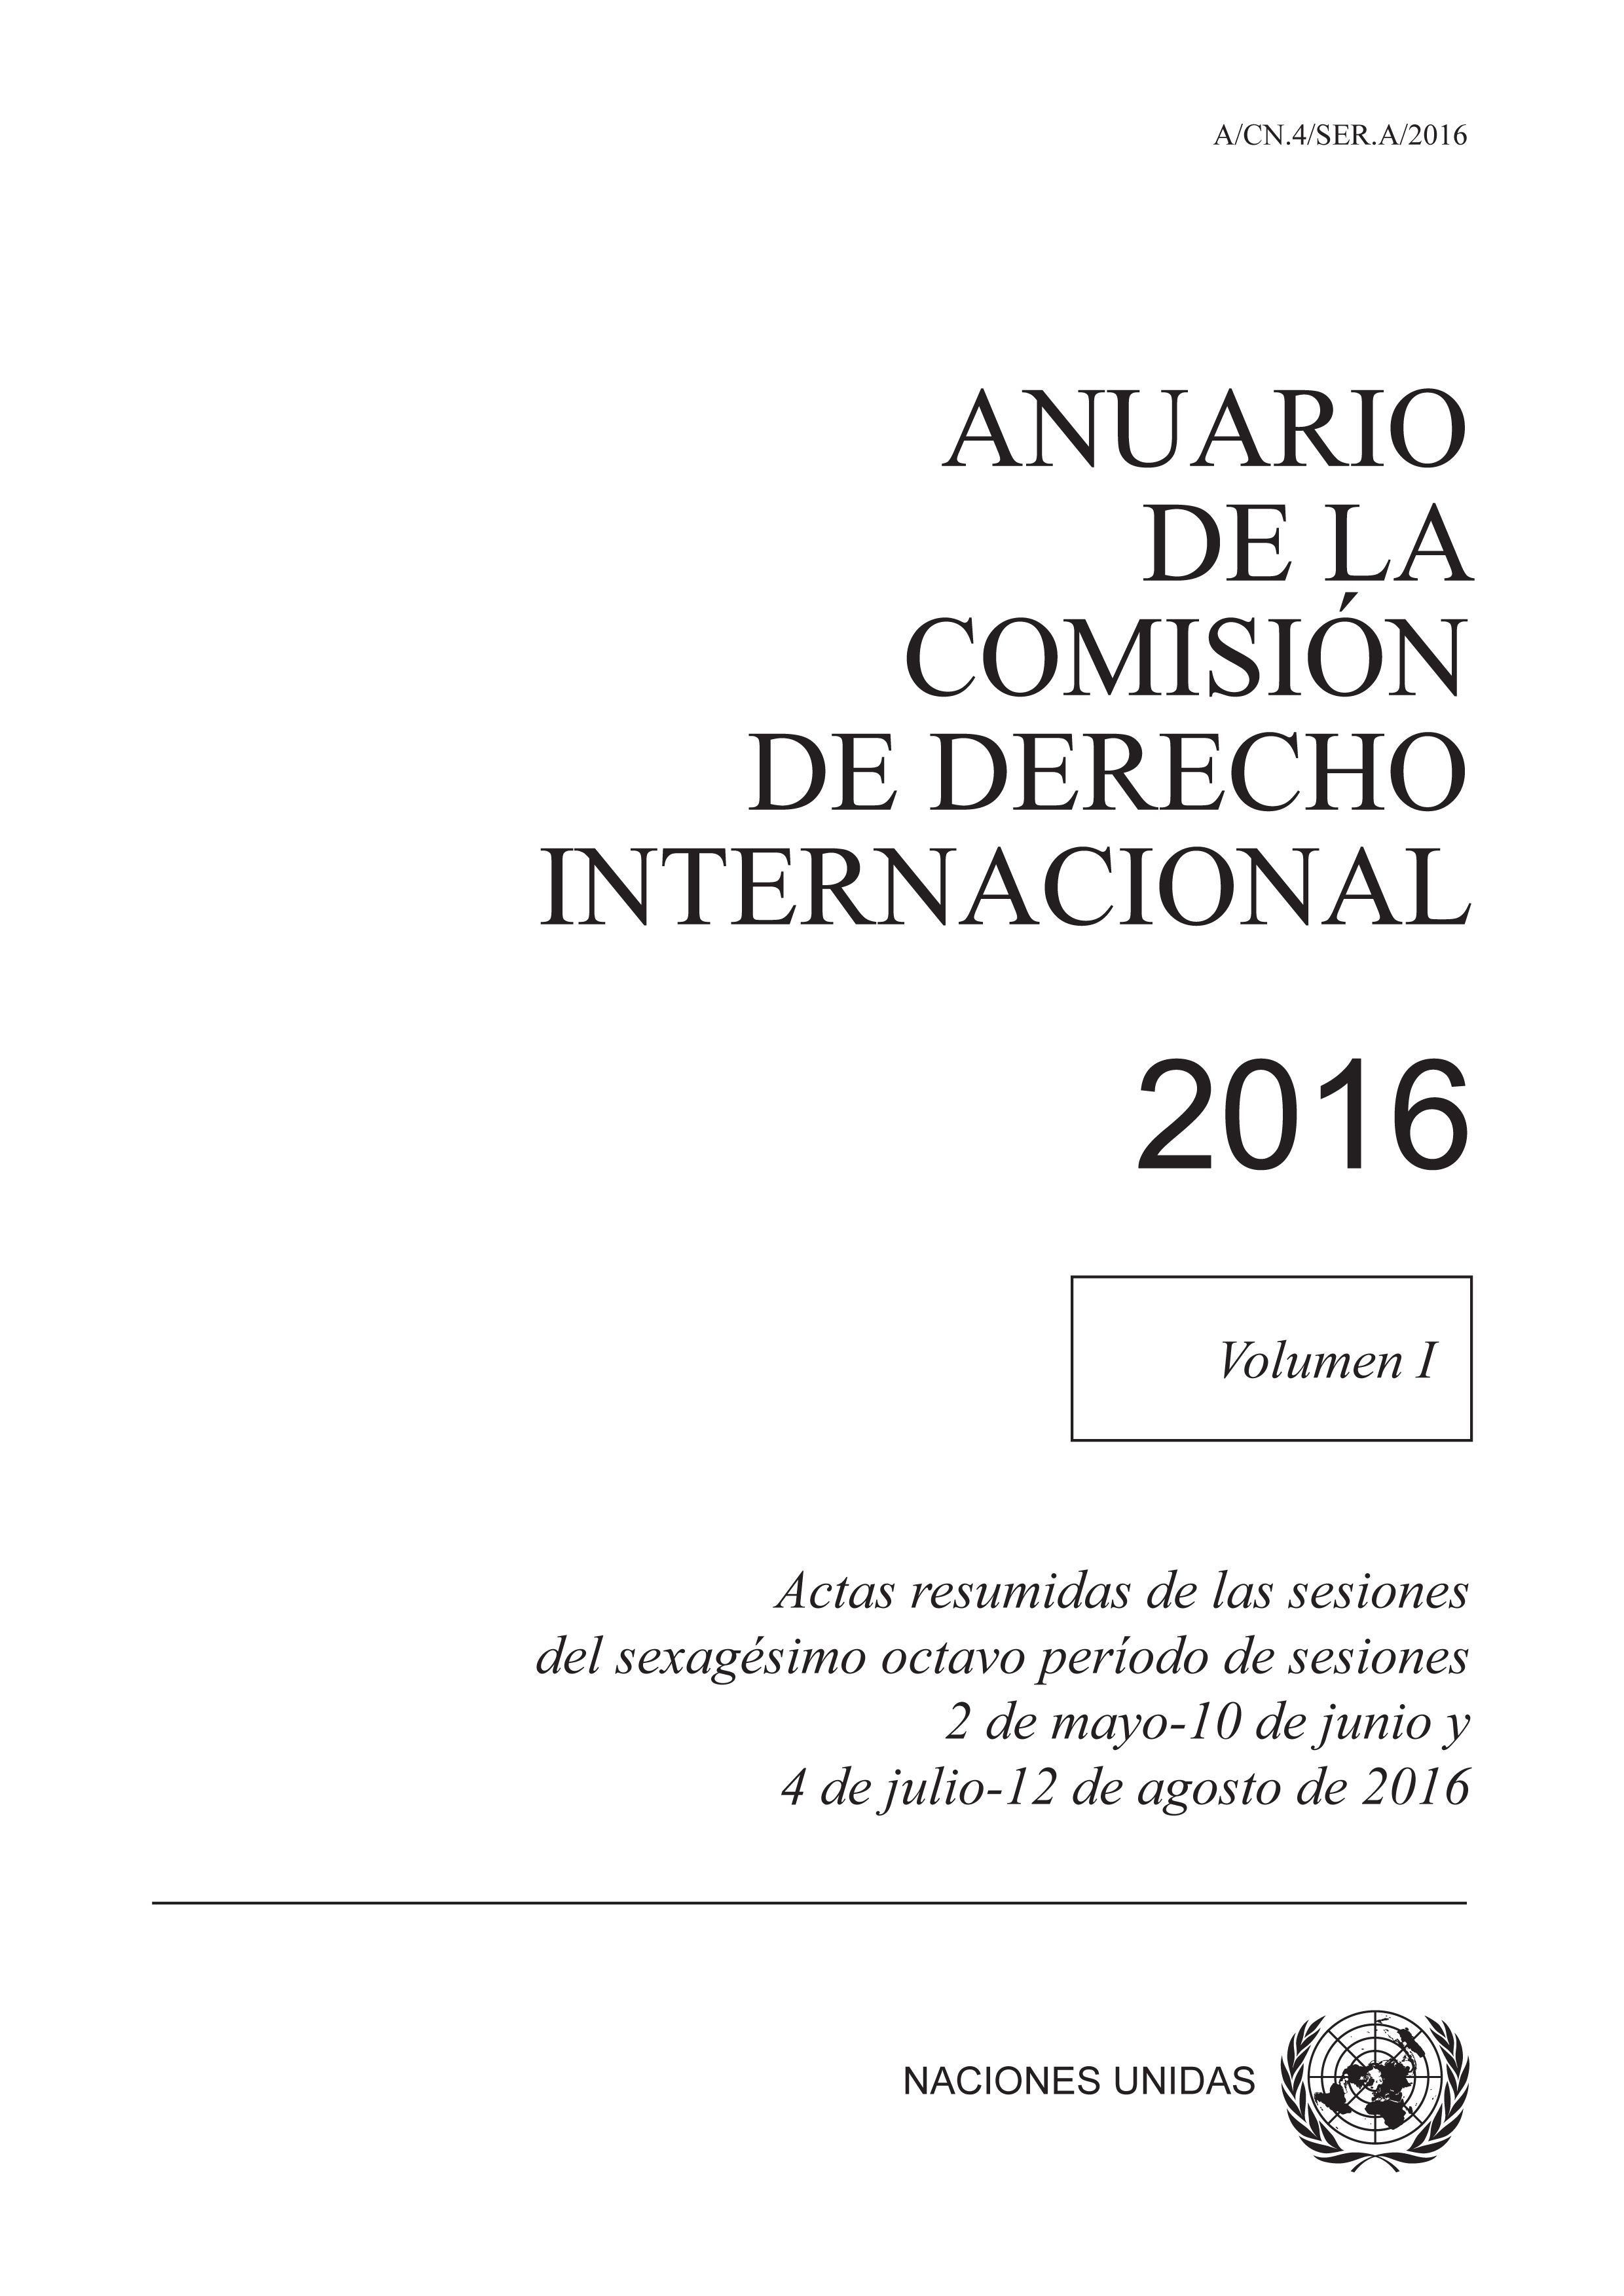 image of Anuario de la Comisión de Derecho Internacional 2016, Vol. I